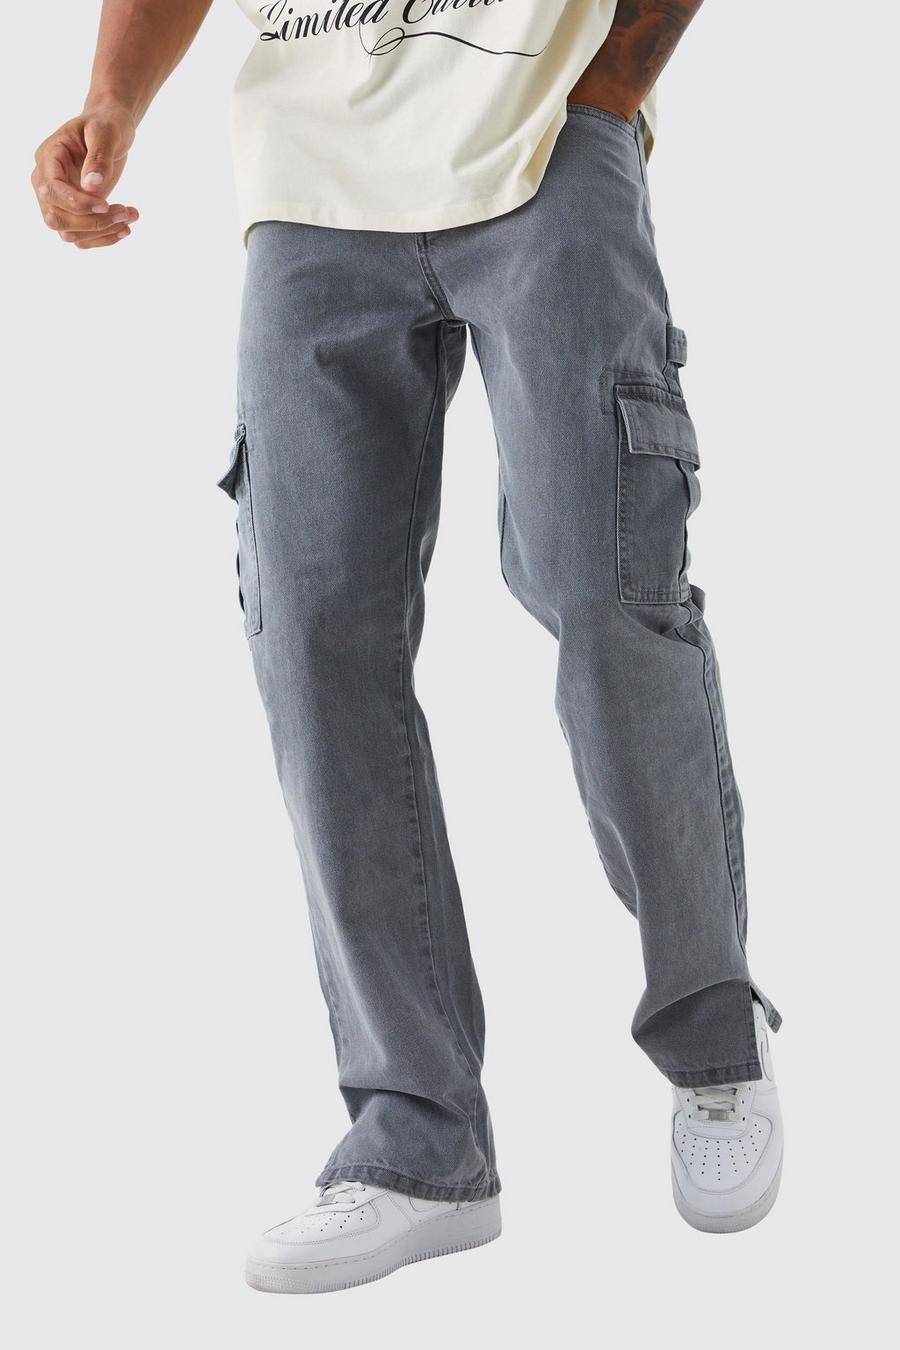 Jeans Tall rilassati in denim rigido stile Carpenter con spacco sul fondo, Mid grey